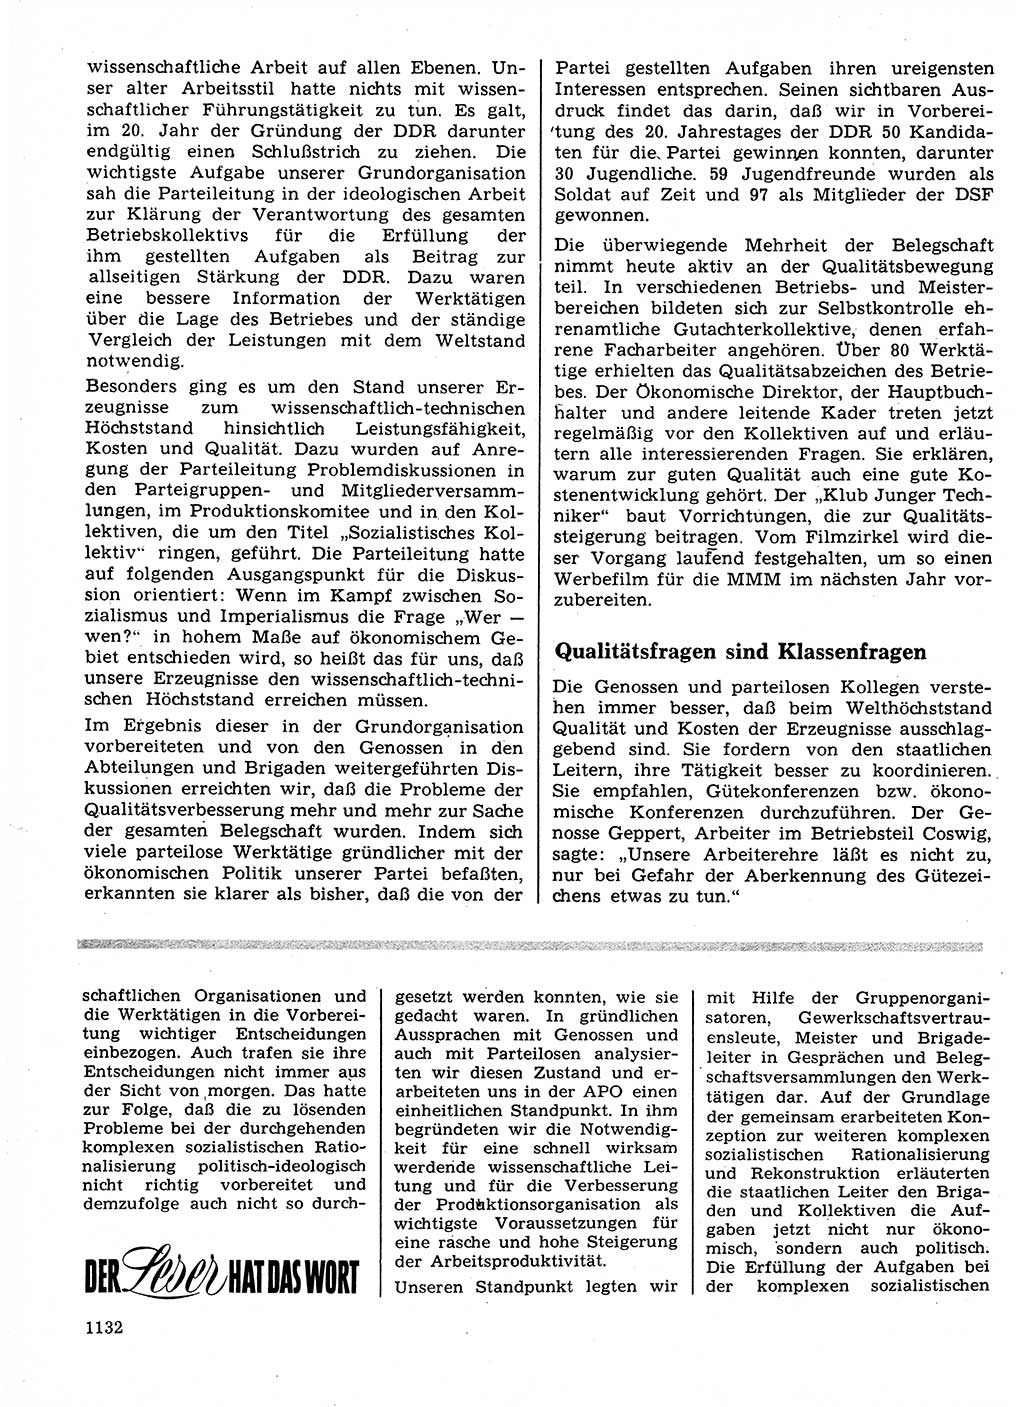 Neuer Weg (NW), Organ des Zentralkomitees (ZK) der SED (Sozialistische Einheitspartei Deutschlands) für Fragen des Parteilebens, 24. Jahrgang [Deutsche Demokratische Republik (DDR)] 1969, Seite 1132 (NW ZK SED DDR 1969, S. 1132)